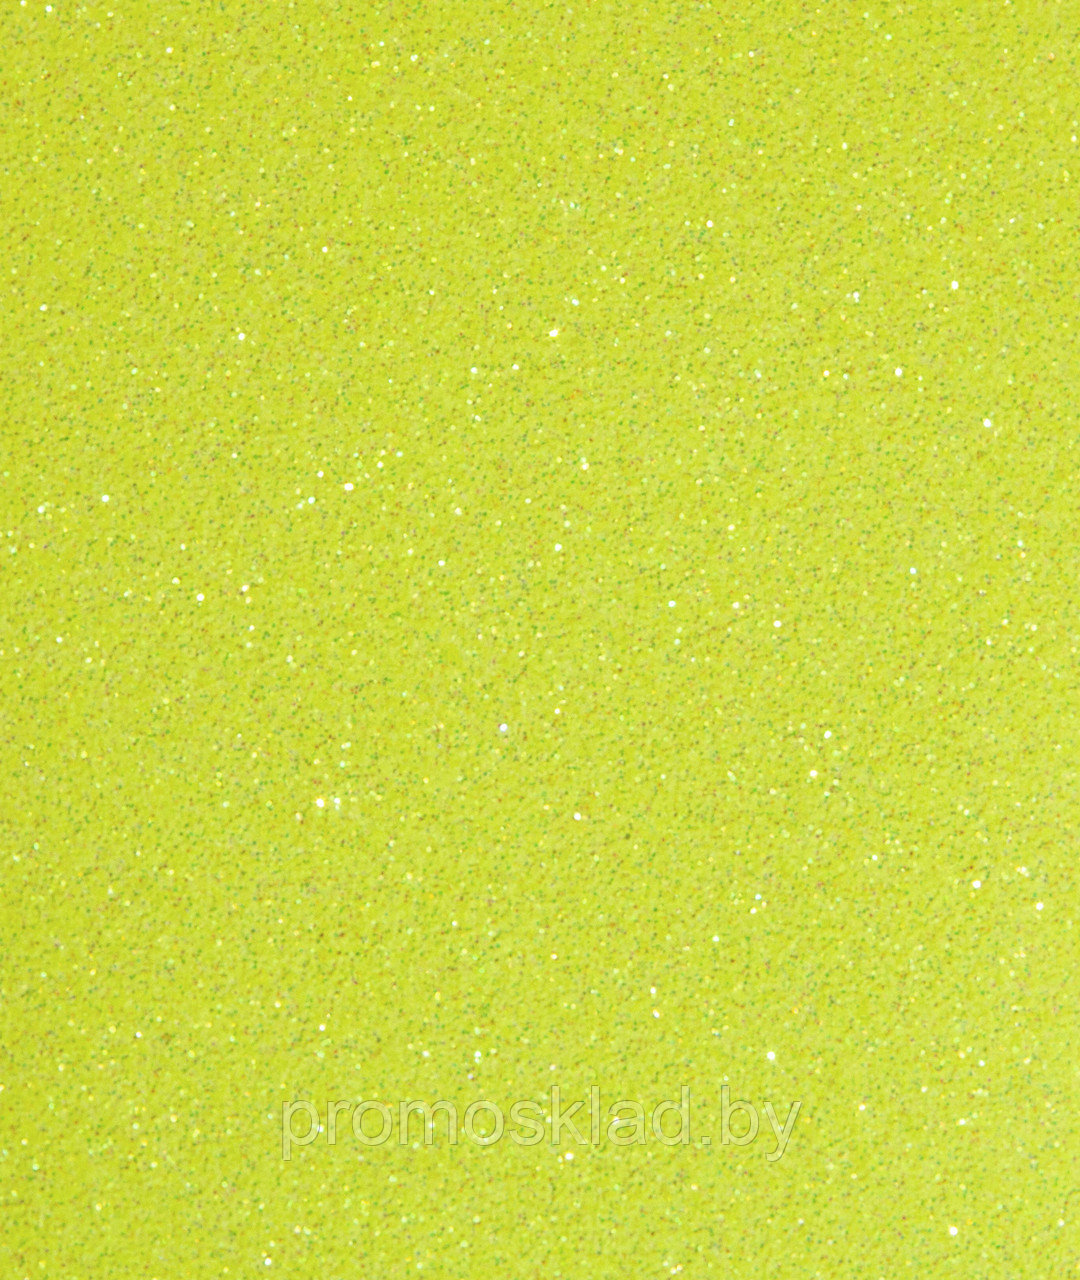 Термотрансферная пленка Glitter Neon Yellow 08 неоновый желтый (полиуретановая основа), SEF Франция